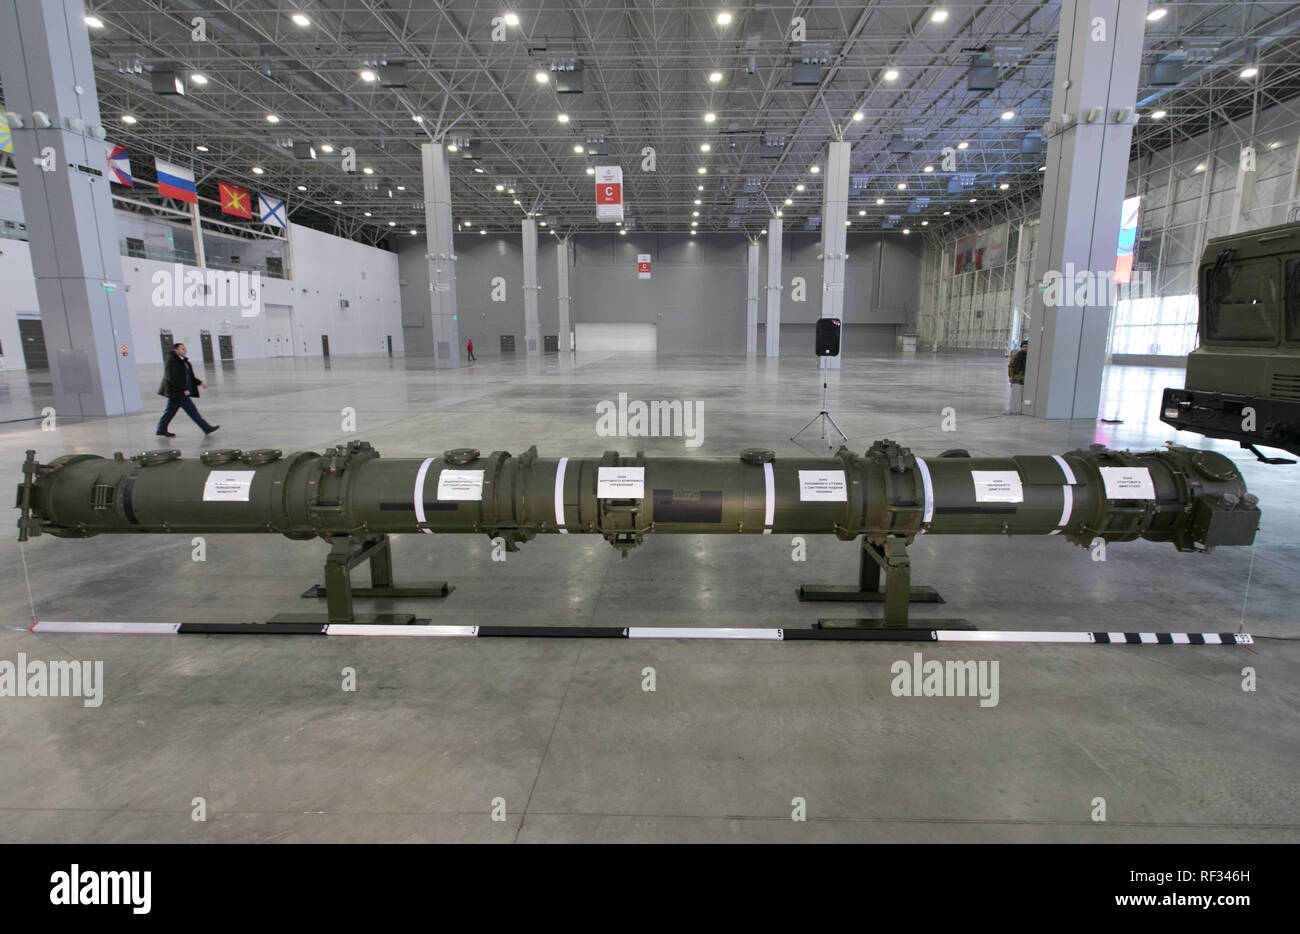 Moscú, Rusia. 23 ene, 2019. El 9M729 contenedor de misiles Patriot se demostró en el Centro de Congresos y Exposiciones, en las afueras de Moscú, Rusia, el 23 de enero, 2019. La Federación de 9M729 de los misiles de crucero con base en tierra, contrariamente a las alegaciones de los Estados Unidos, no cae bajo el Tratado de Fuerzas Nucleares de Alcance Intermedio (INF), altos funcionarios rusos dijeron el miércoles. Crédito: Bai Xueqi/Xinhua/Alamy Live News Foto de stock